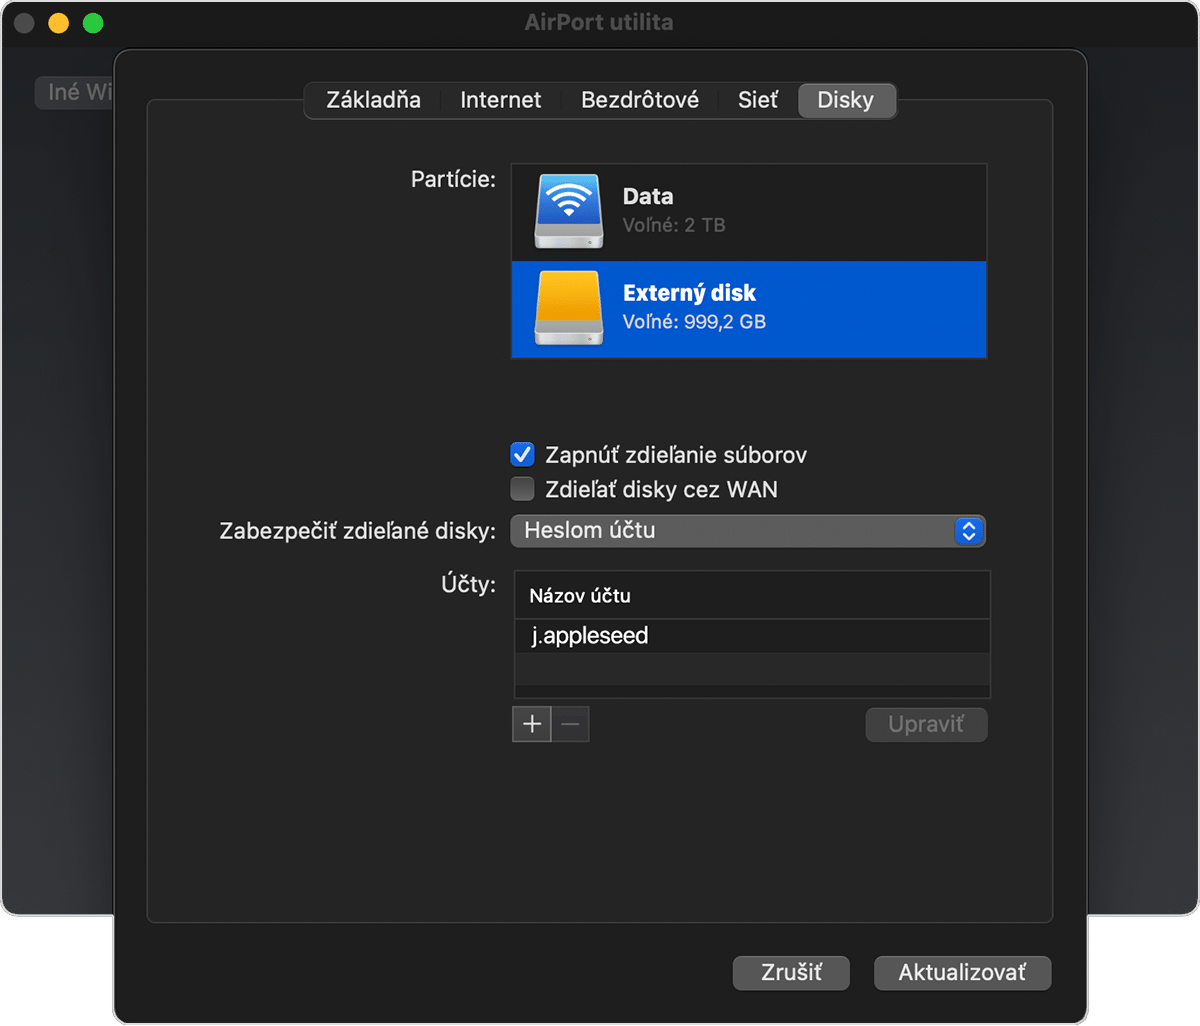 Tab Disky v okne AirPort utilita so zapnutou možnosťou Zapnúť zdieľanie súborov